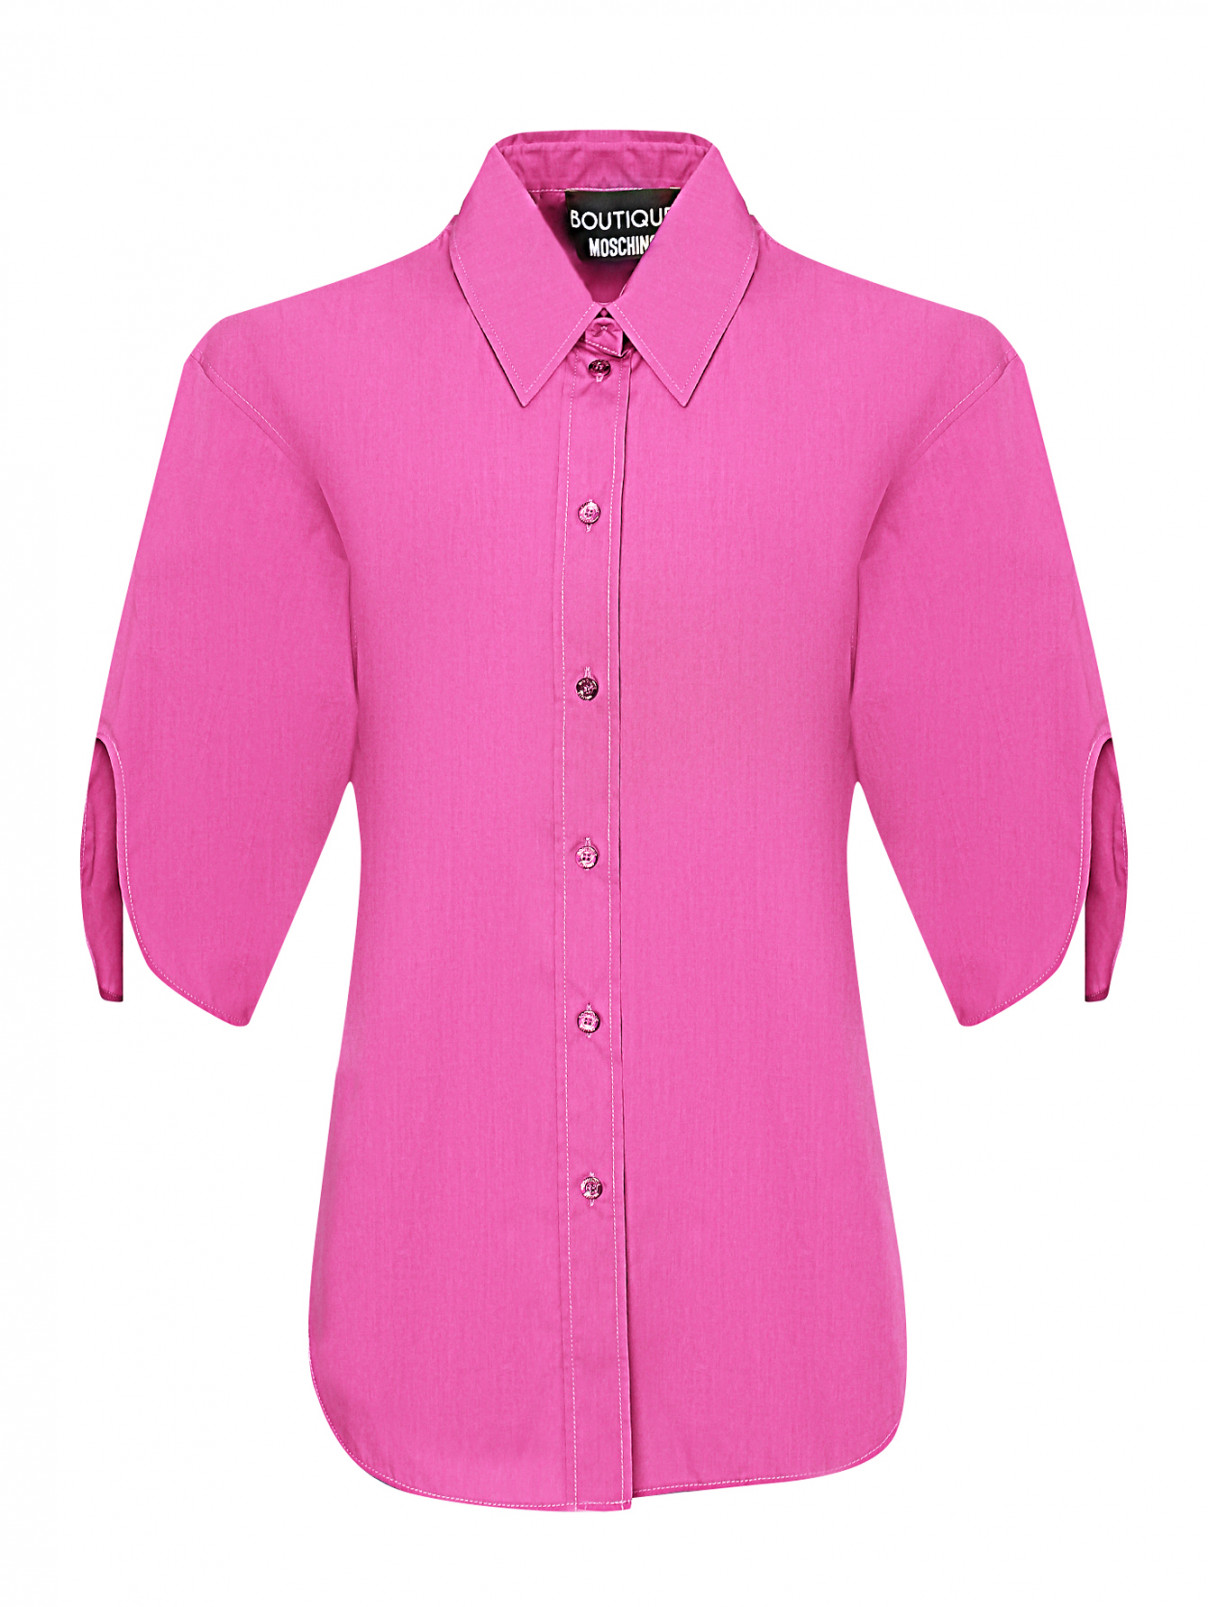 Блуза из хлопка с вырезами на рукавах Moschino Boutique  –  Общий вид  – Цвет:  Фиолетовый